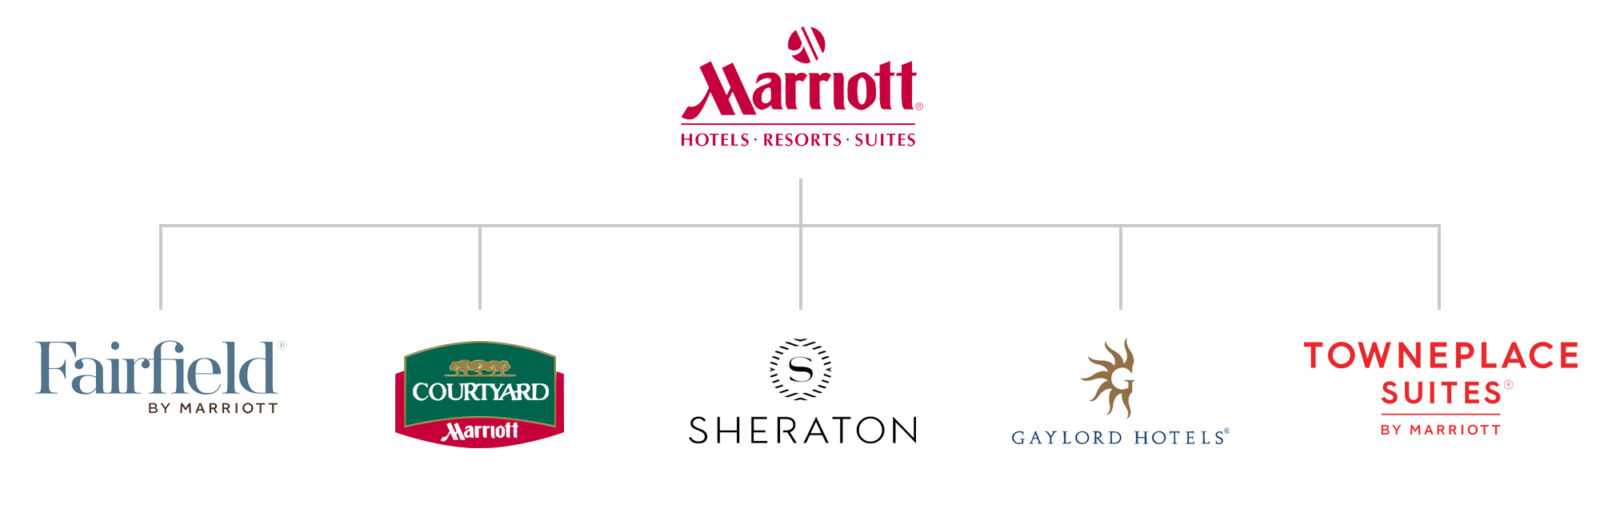 Marriott Brand Architecture Diagram